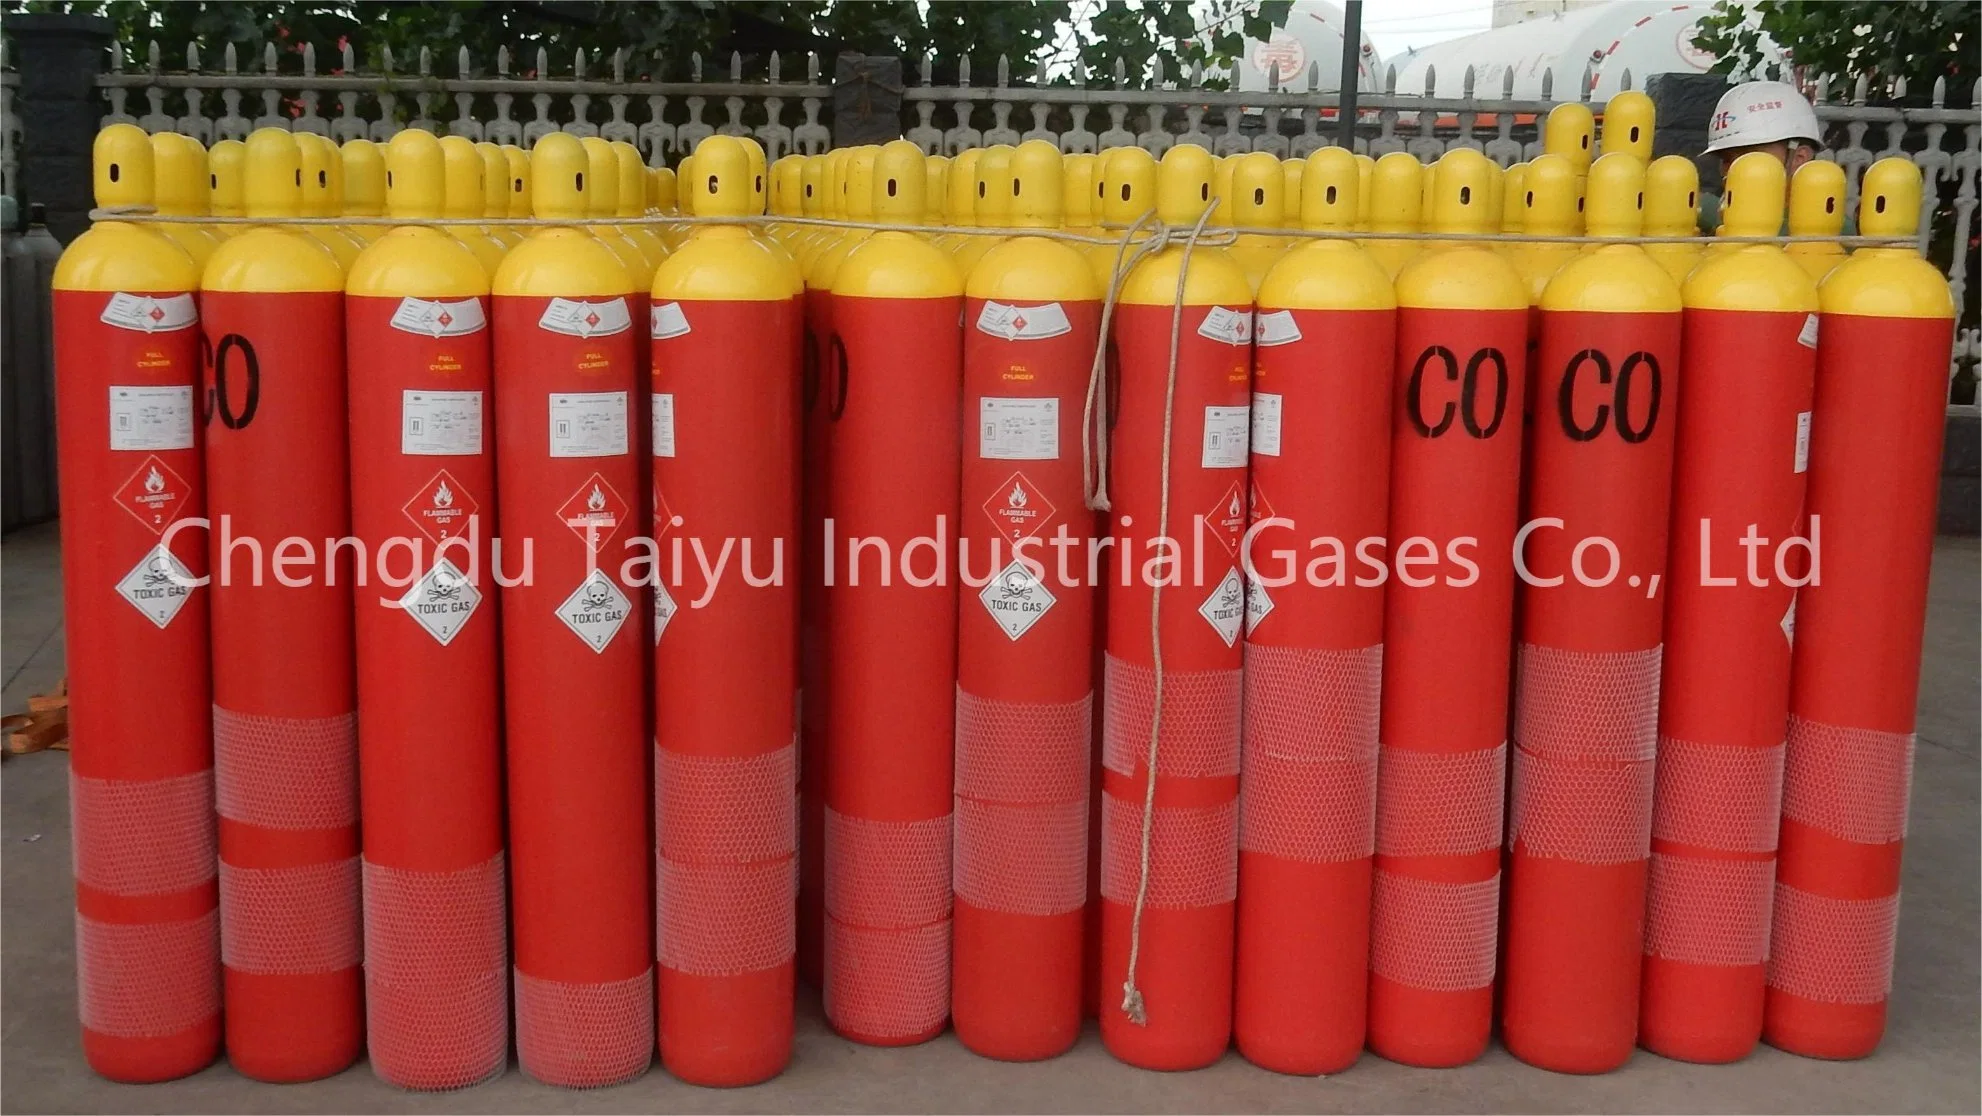 China Specialty Gas Carbon Monoxide Co Gas / C2h4 Gas/ Sf6 Gas/ No Gas/ H2s Gas/ C2h6 Gas

Gaz de monoxyde de carbone de gaz spécialisé en Chine / Gaz C2H4 / Gaz SF6 / Pas de gaz / Gaz H2S / Gaz C2H6